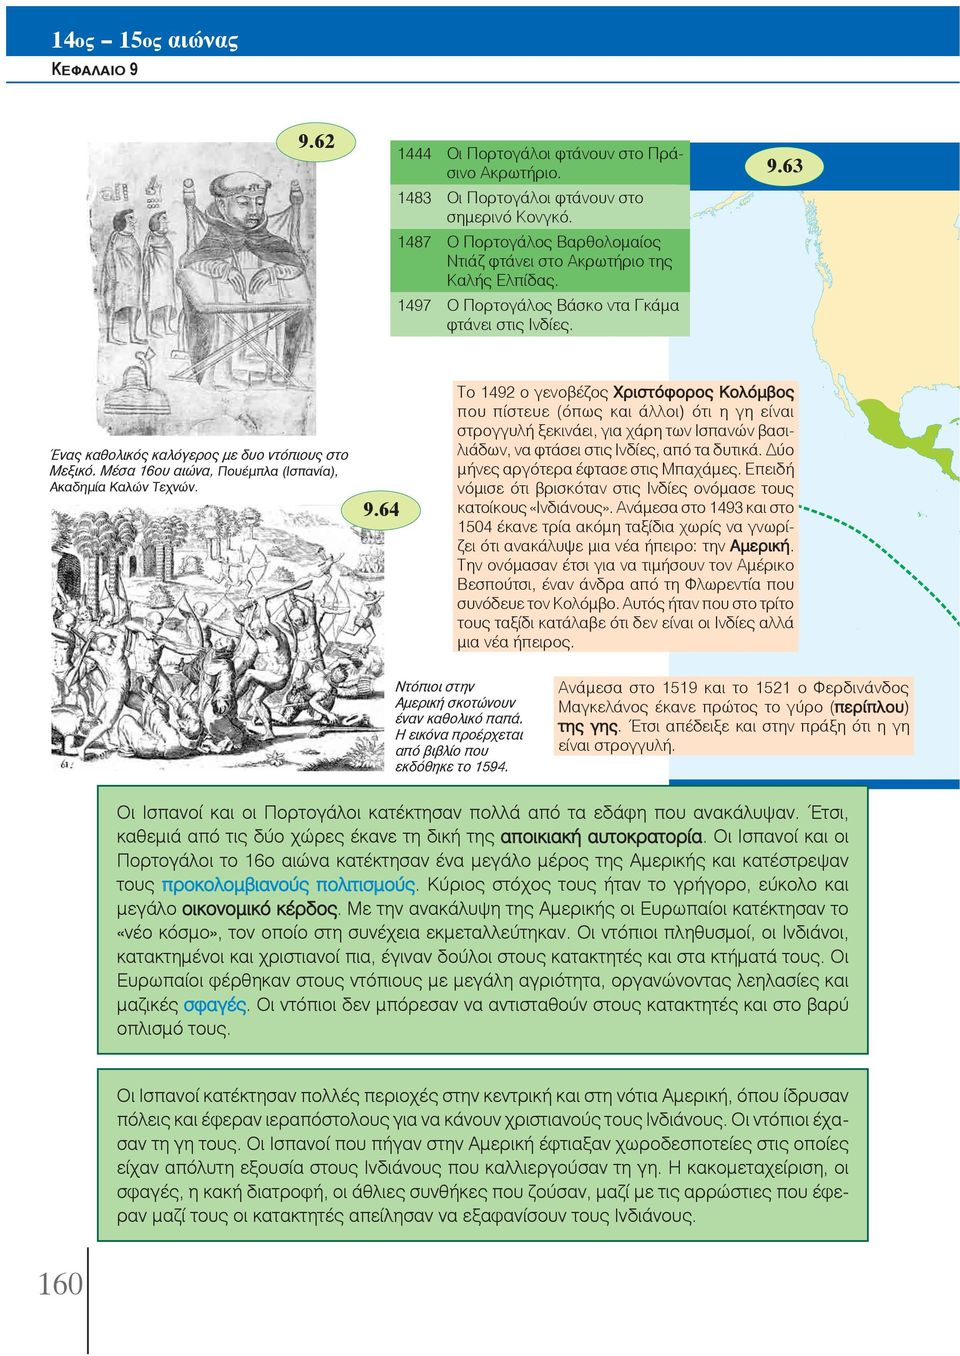 64 Το 1492 ο γενοβέζος Χριστόφορος Κολόμβος που πίστευε (όπως και άλλοι) ότι η γη είναι στρογγυλή ξεκινάει, για χάρη των Ισπανών βασιλιάδων, να φτάσει στις Ινδίες, από τα δυτικά.